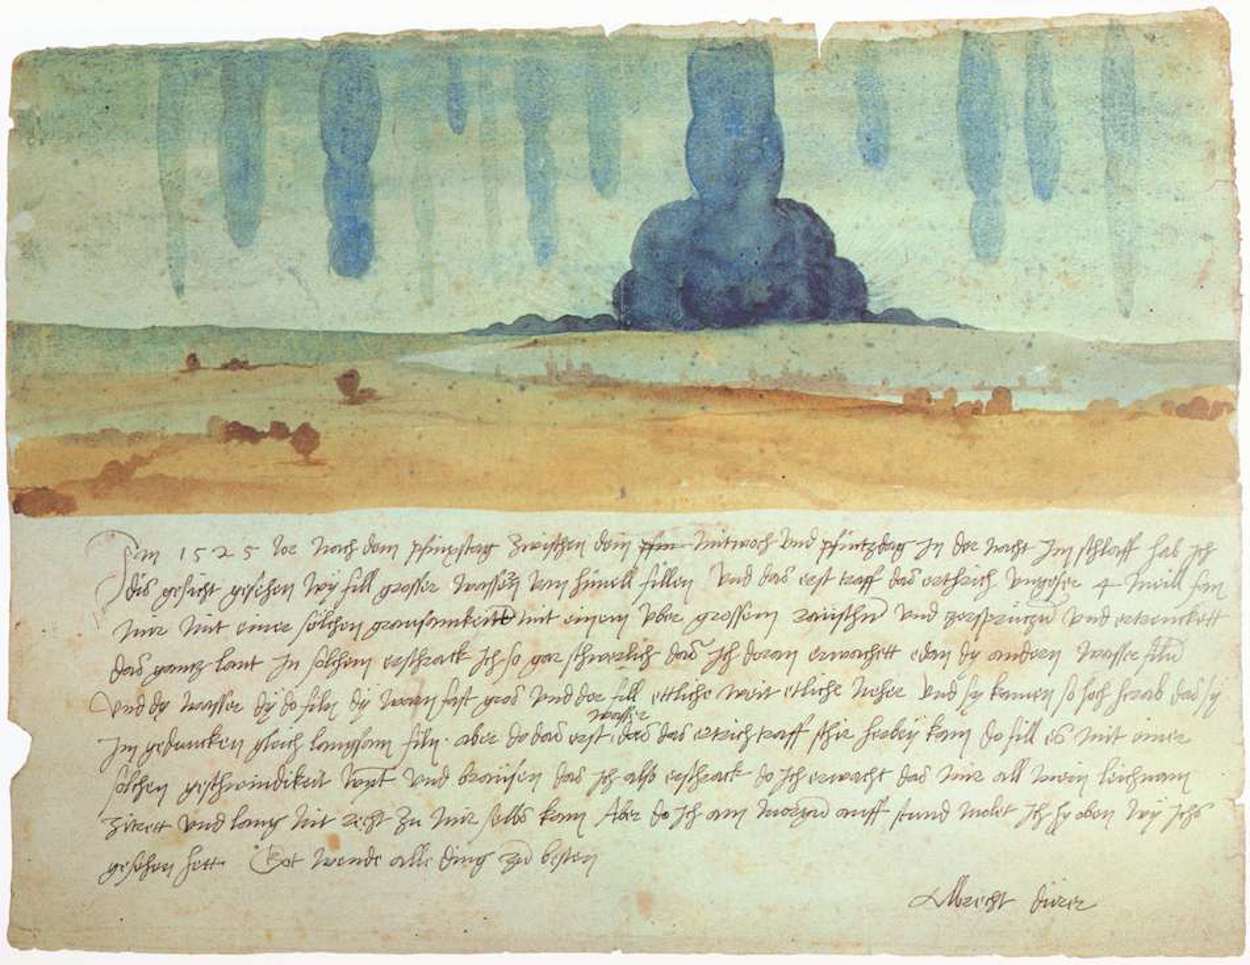 梦想愿景 by 阿尔布雷希特· 丢勒 - 1525 艺术史博物馆